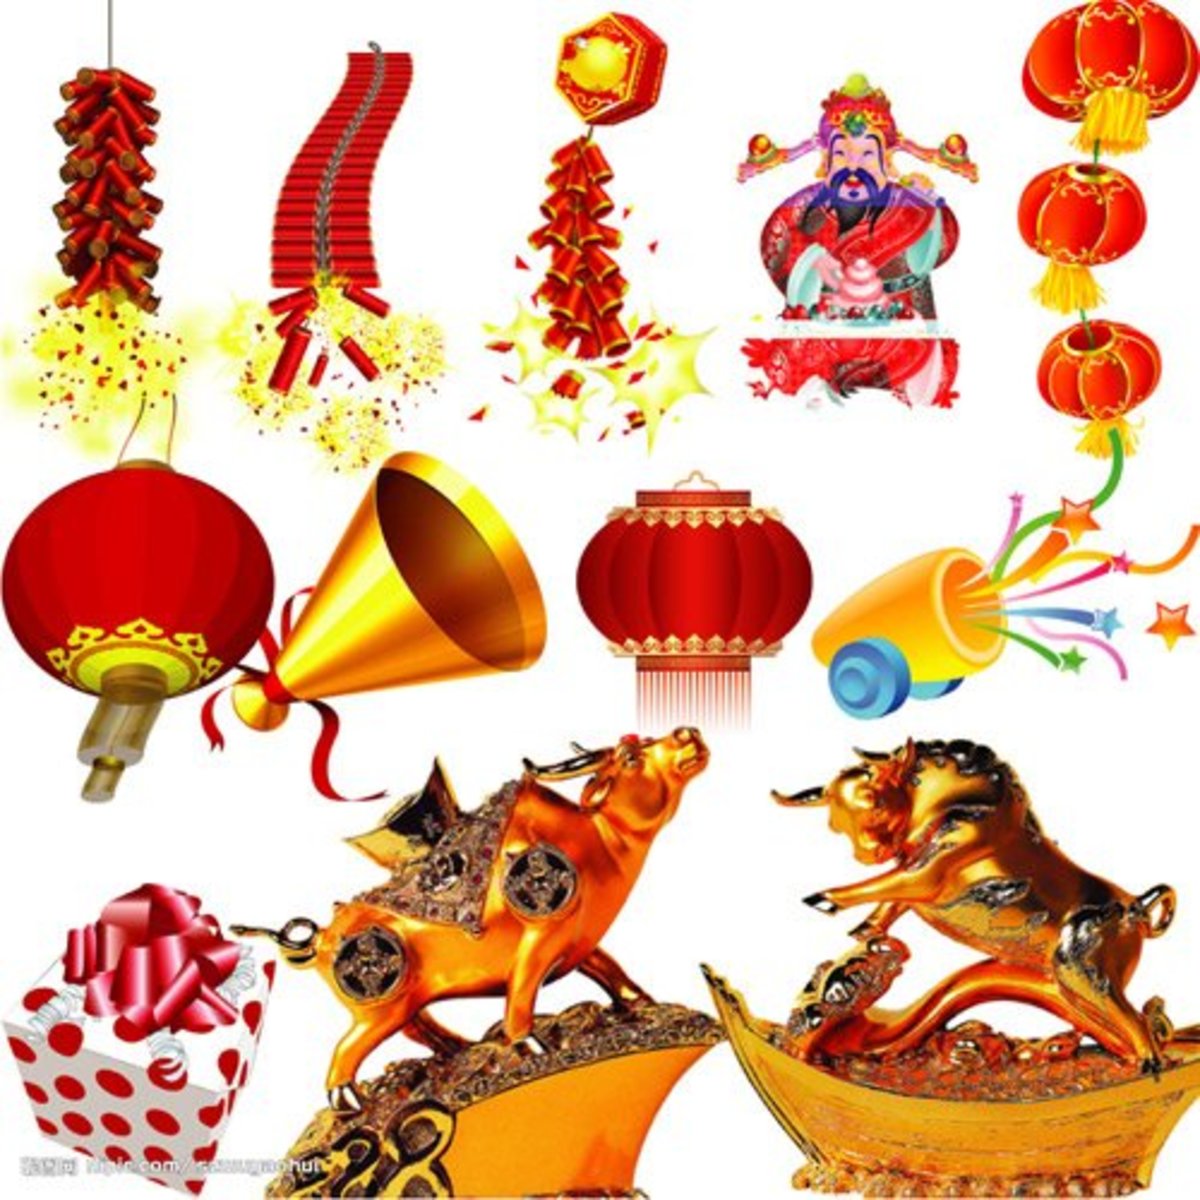 gong-xi-fa-cai-gong-hei-fat-choy-wan-shi-ru-yi-guo-nian-hao-happy-chinese-lunar-new-year-2011